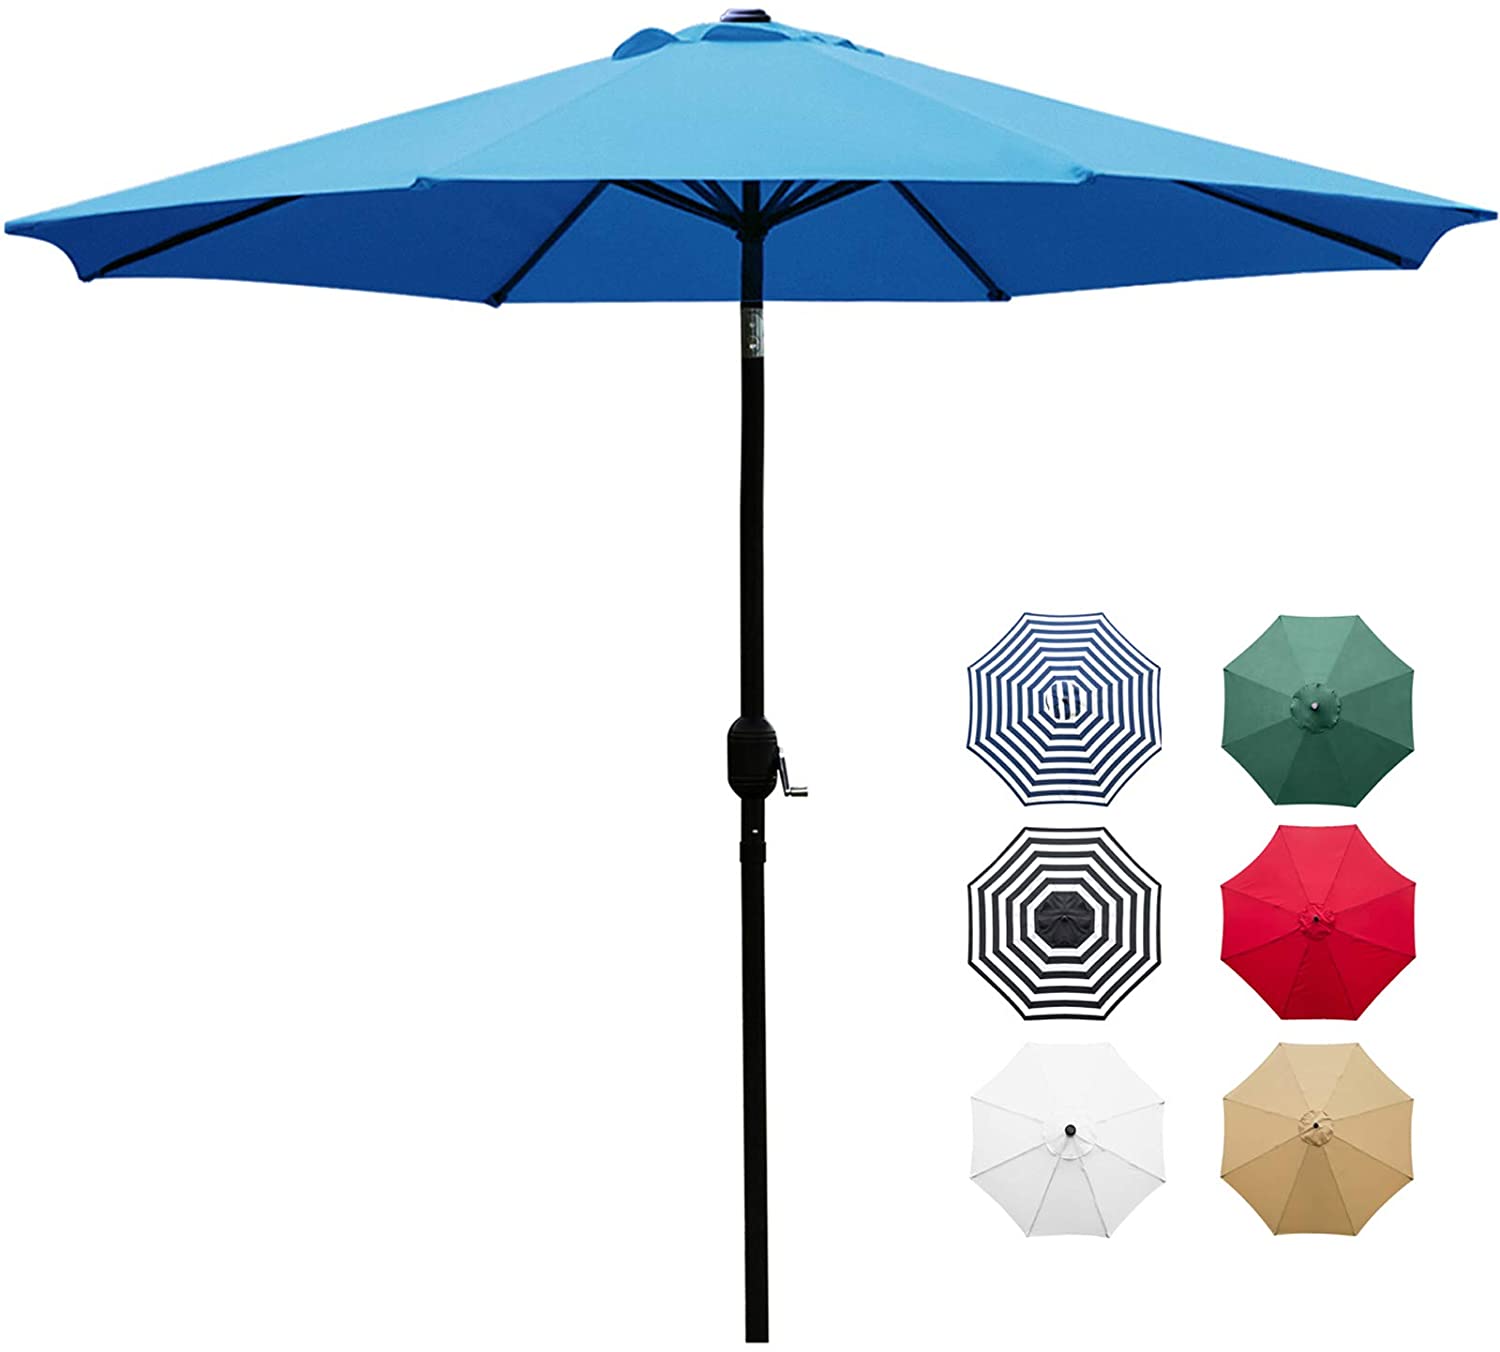 Sunnyglade Push-Button Tilt Patio Table Umbrella, 9-Foot